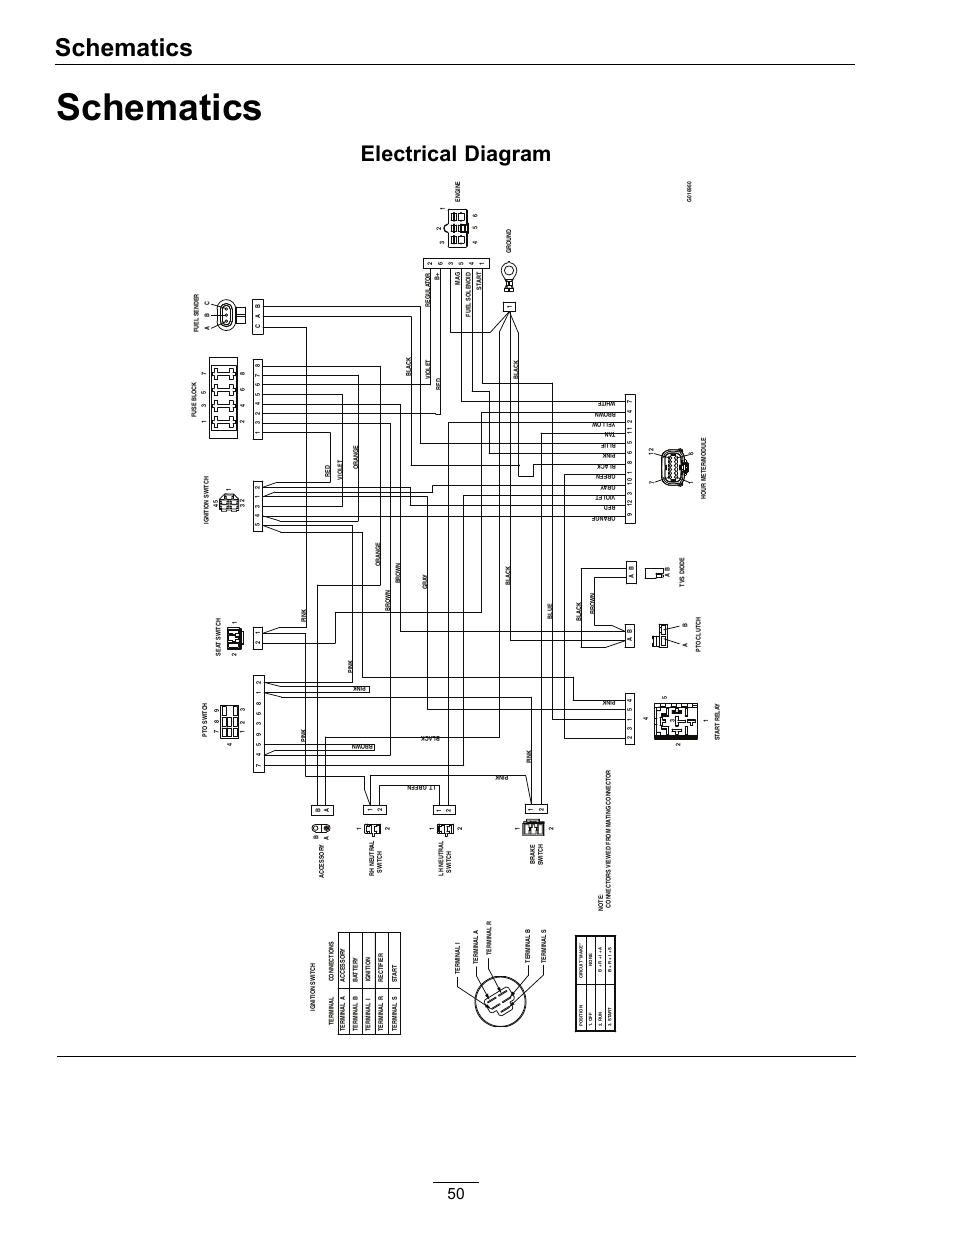 2000 ford f250 diesel fuse box diagram